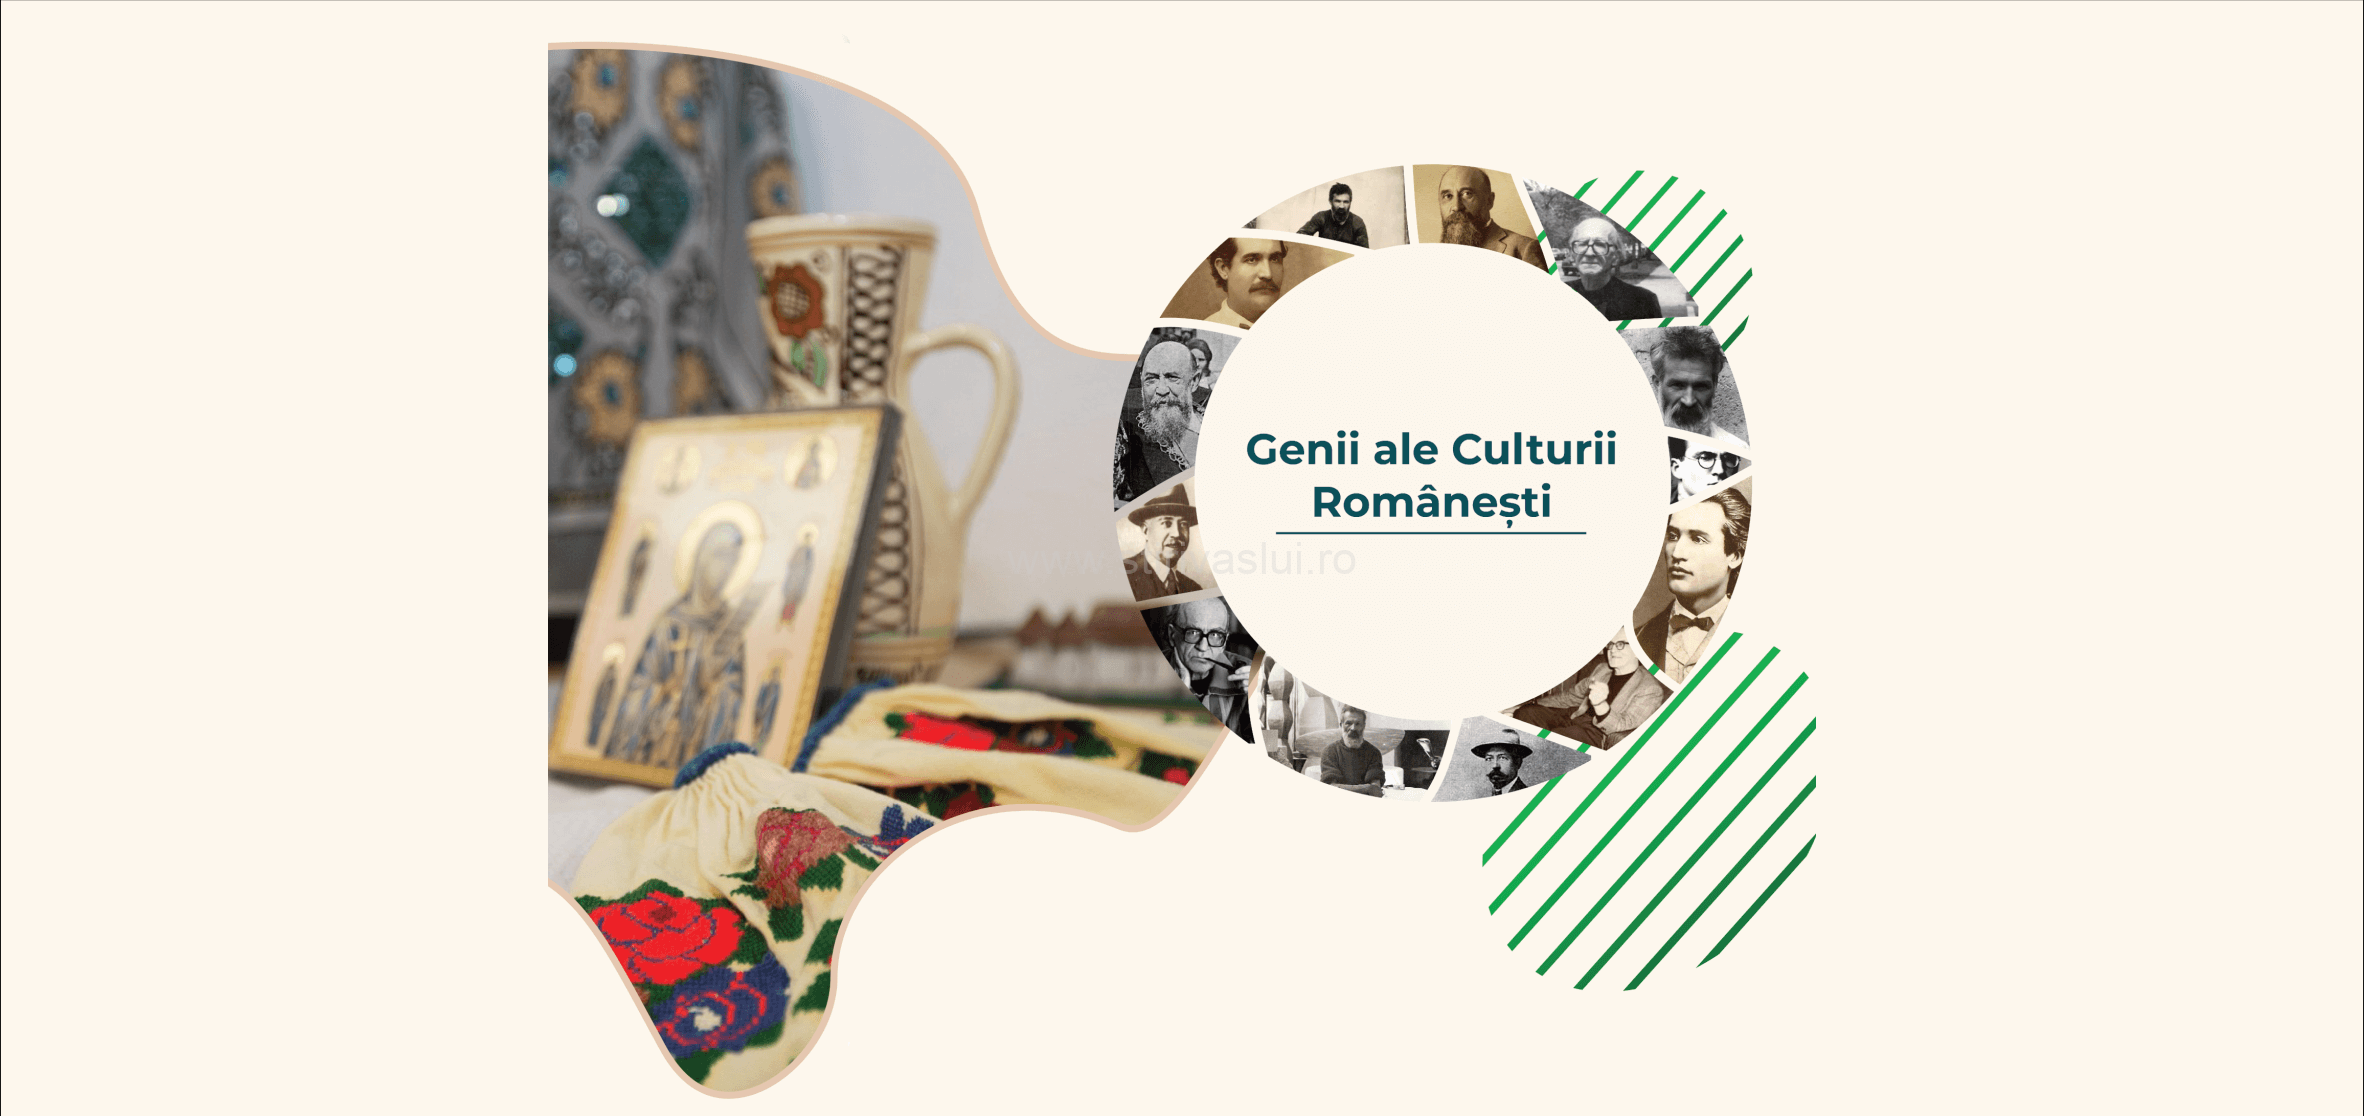 Genii ale culturii românești